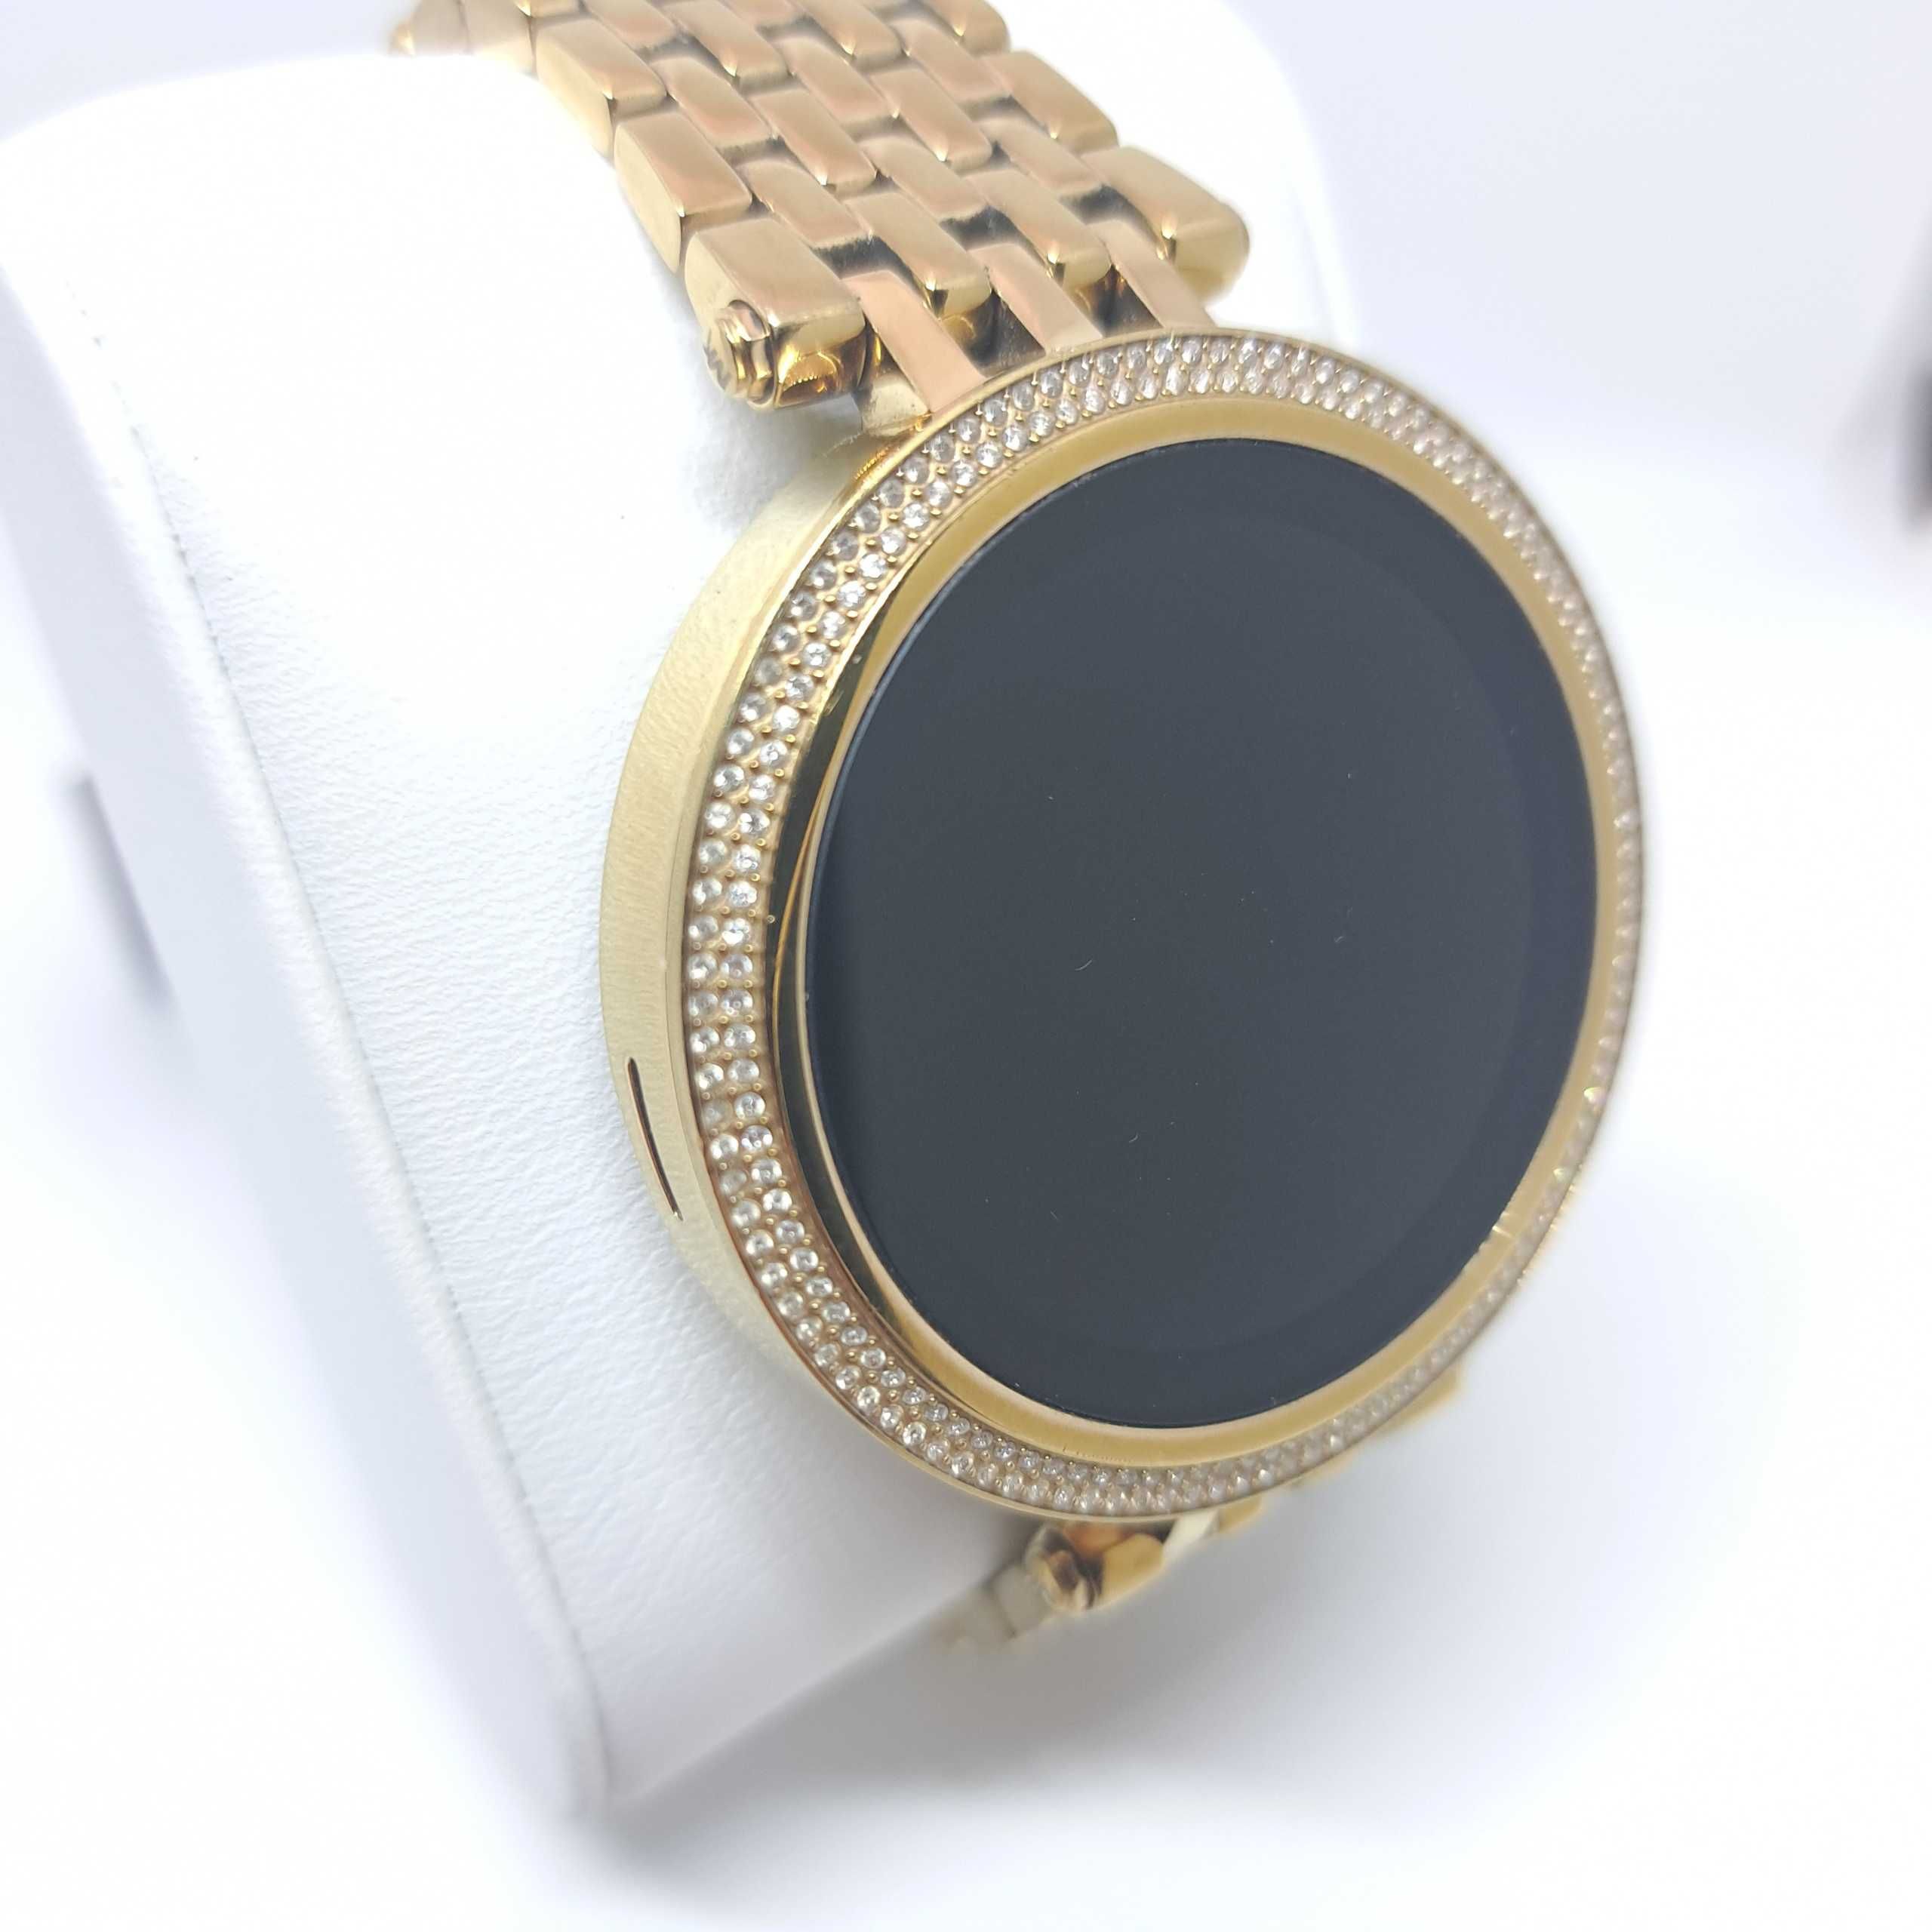 Zegarek smartwatch Michael Kors Access Idealny Złoty